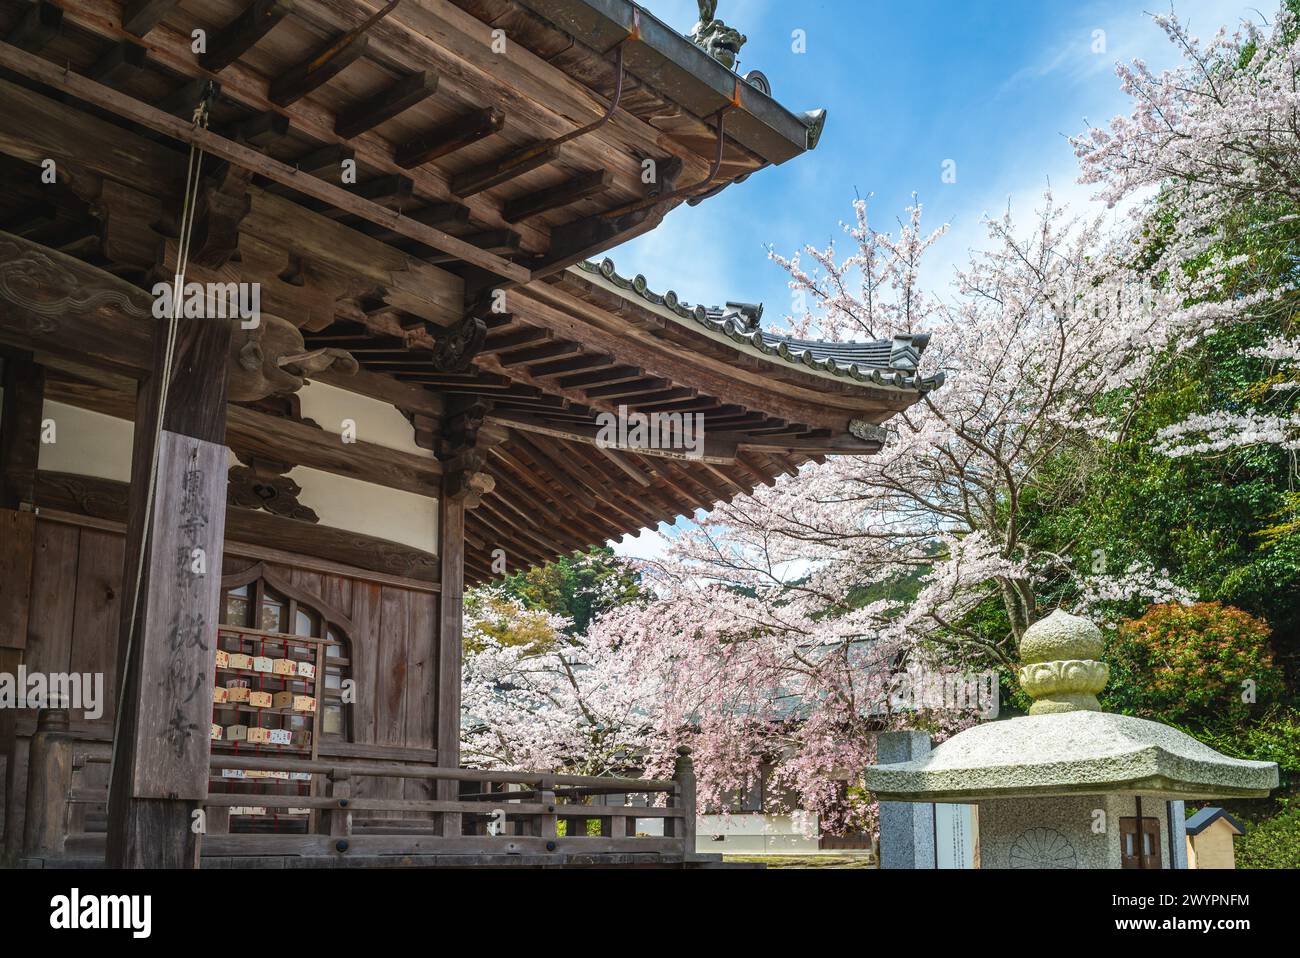 Temple Onjoji, ou Miidera, avec des cerisiers en fleurs au mont Hiei dans la ville d'Otsu à Shiga, Japon. Traduction : Bimyoji en Onjoji Banque D'Images